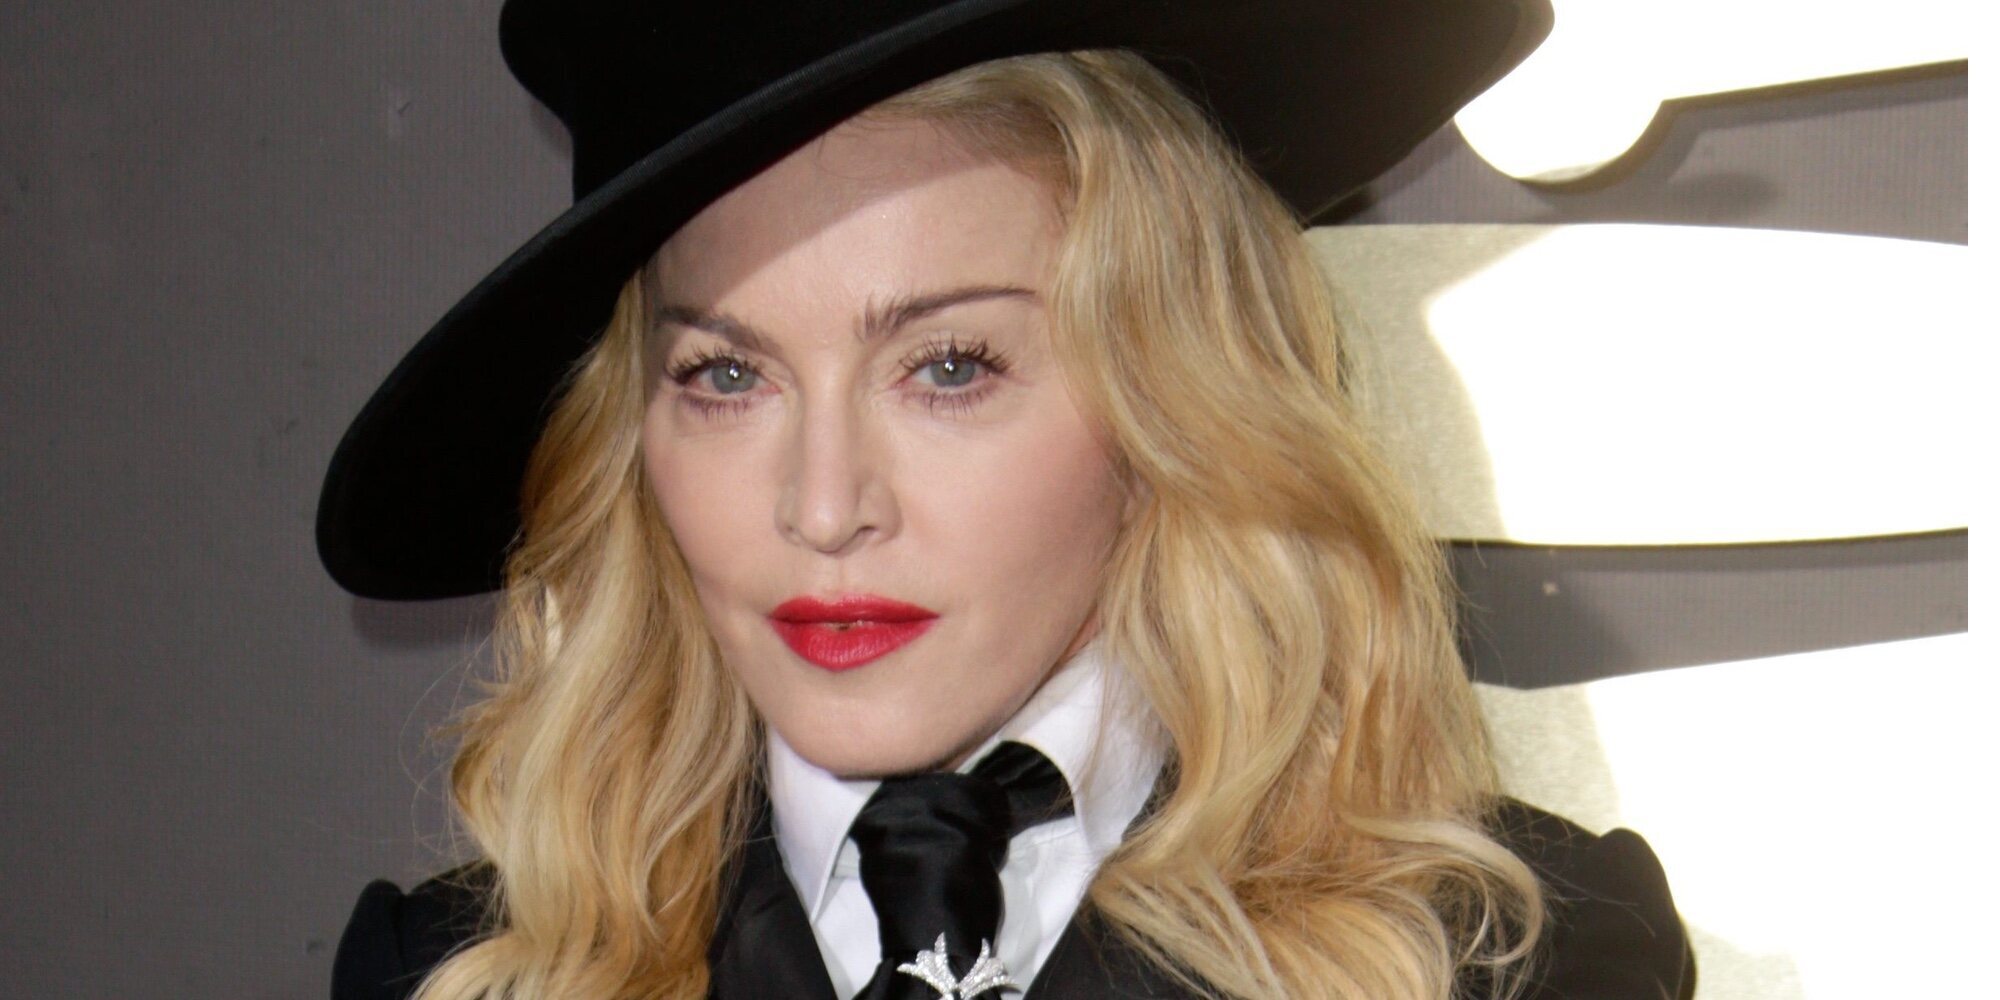 Madonna estalla contra las críticas: "Soy víctima de la discriminación por la edad y la misoginia"